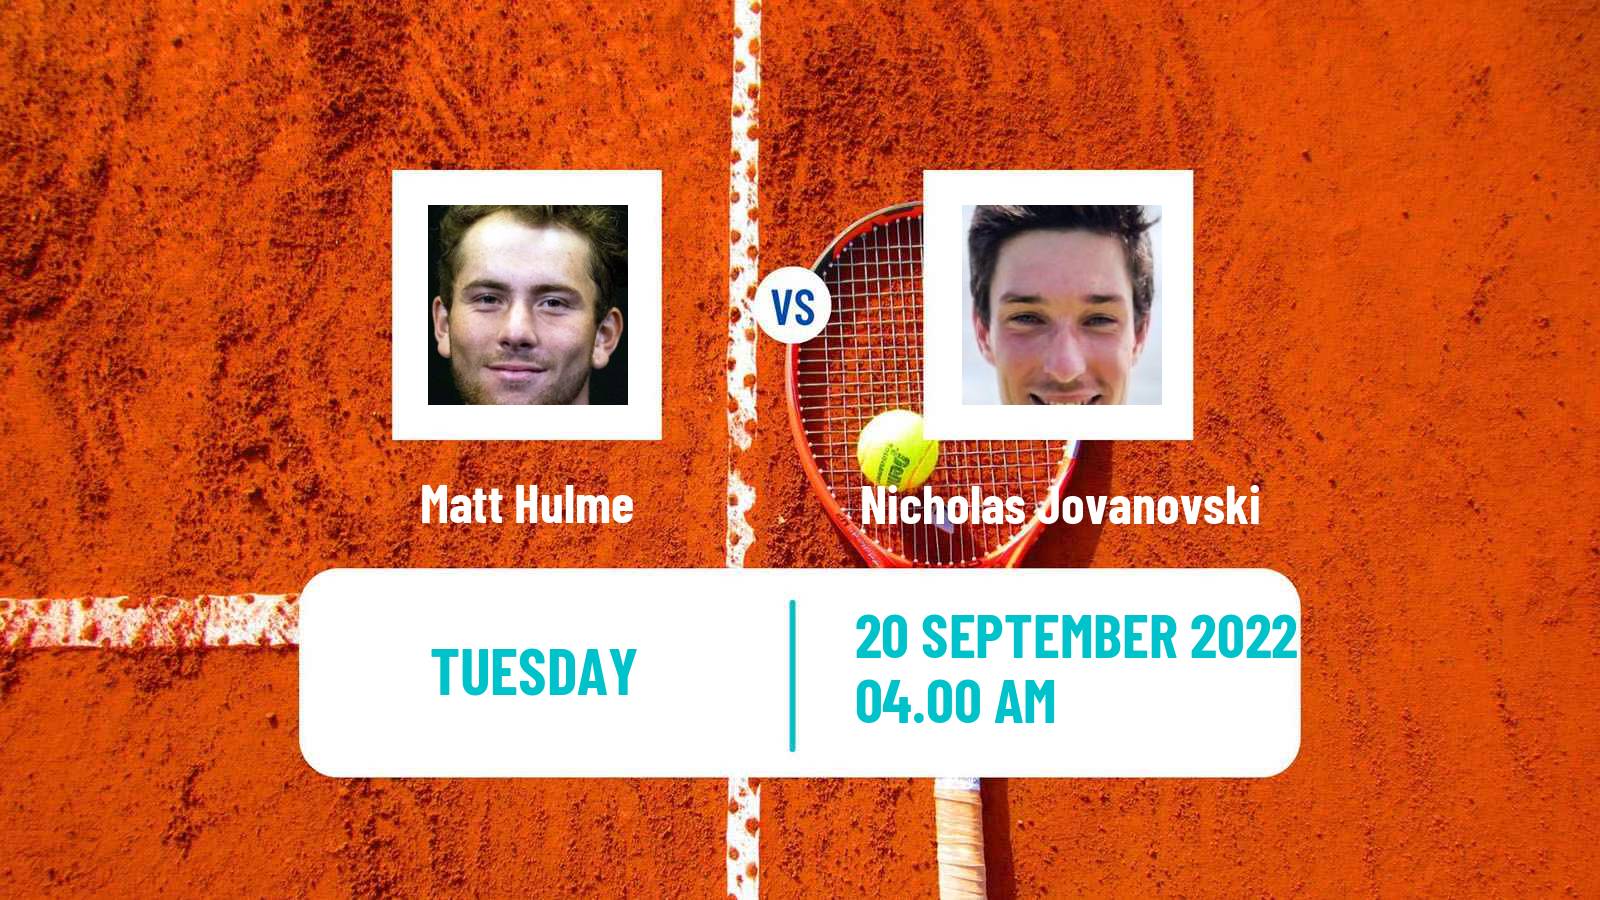 Tennis ITF Tournaments Matt Hulme - Nicholas Jovanovski